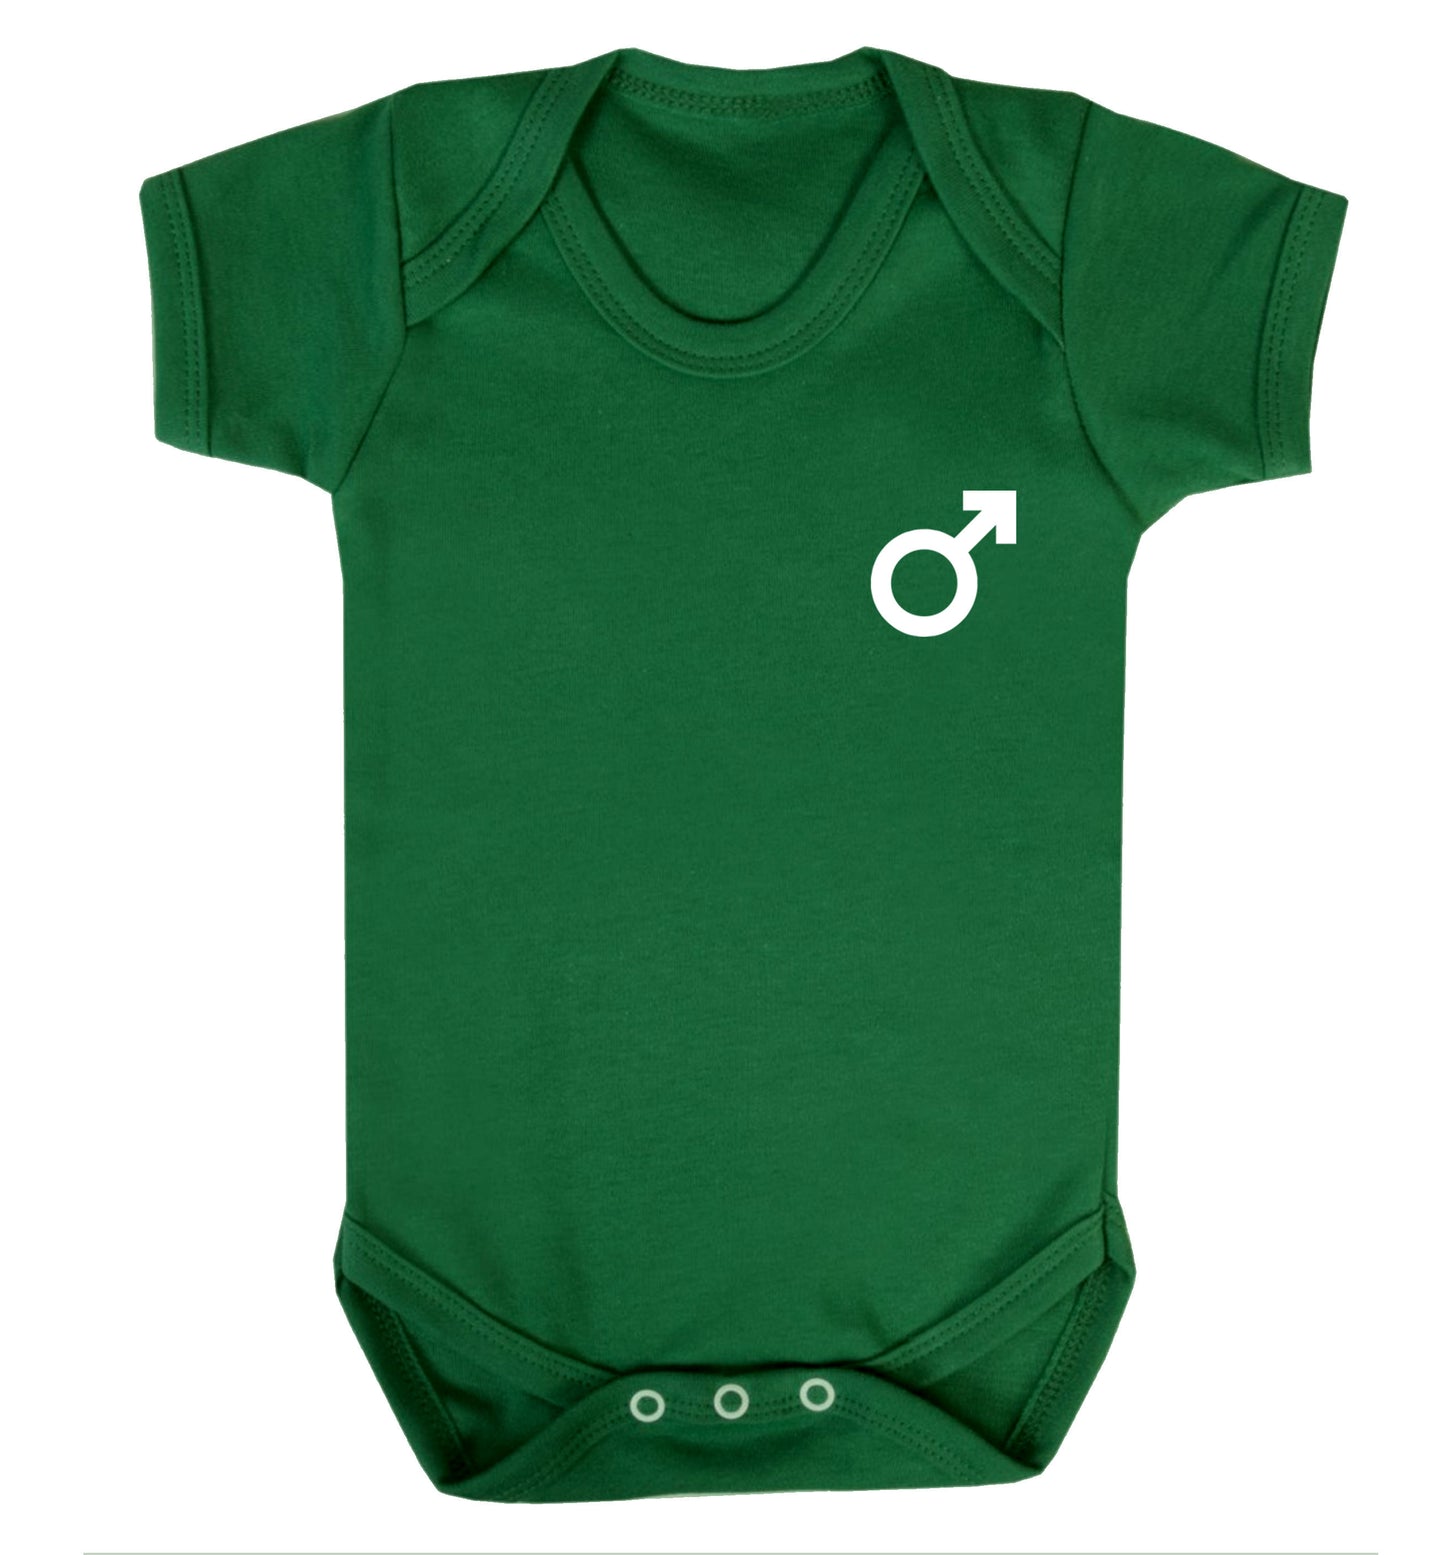 Male symbol pocket Baby Vest green 18-24 months